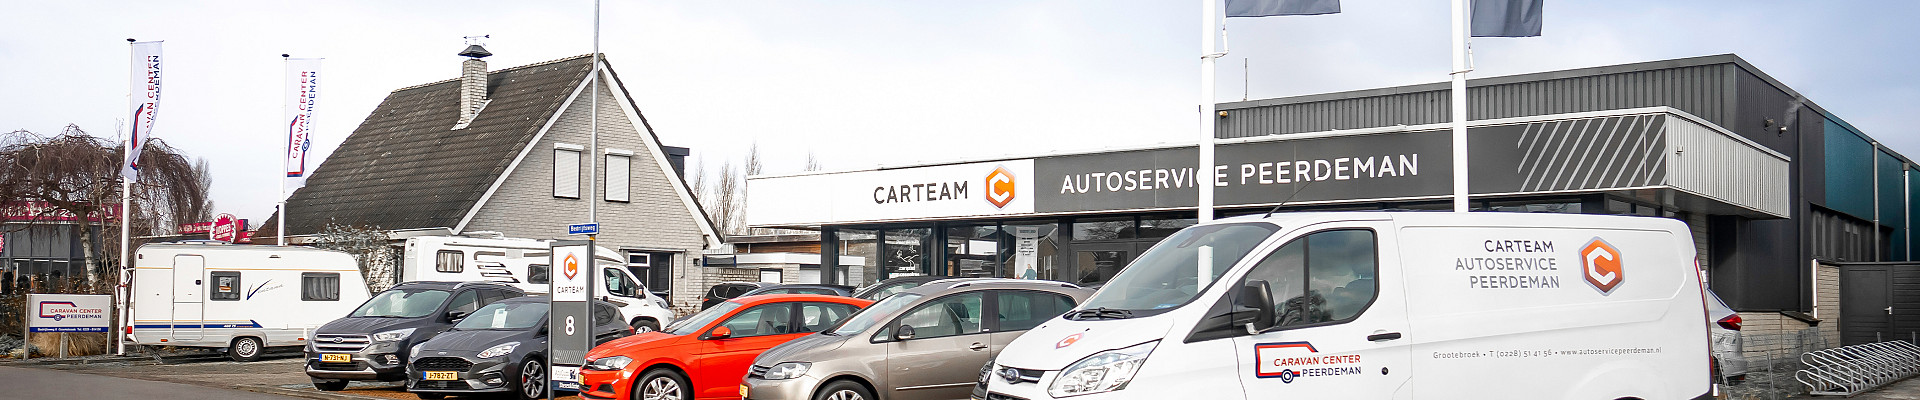 Carteam Autoservice Peerdeman